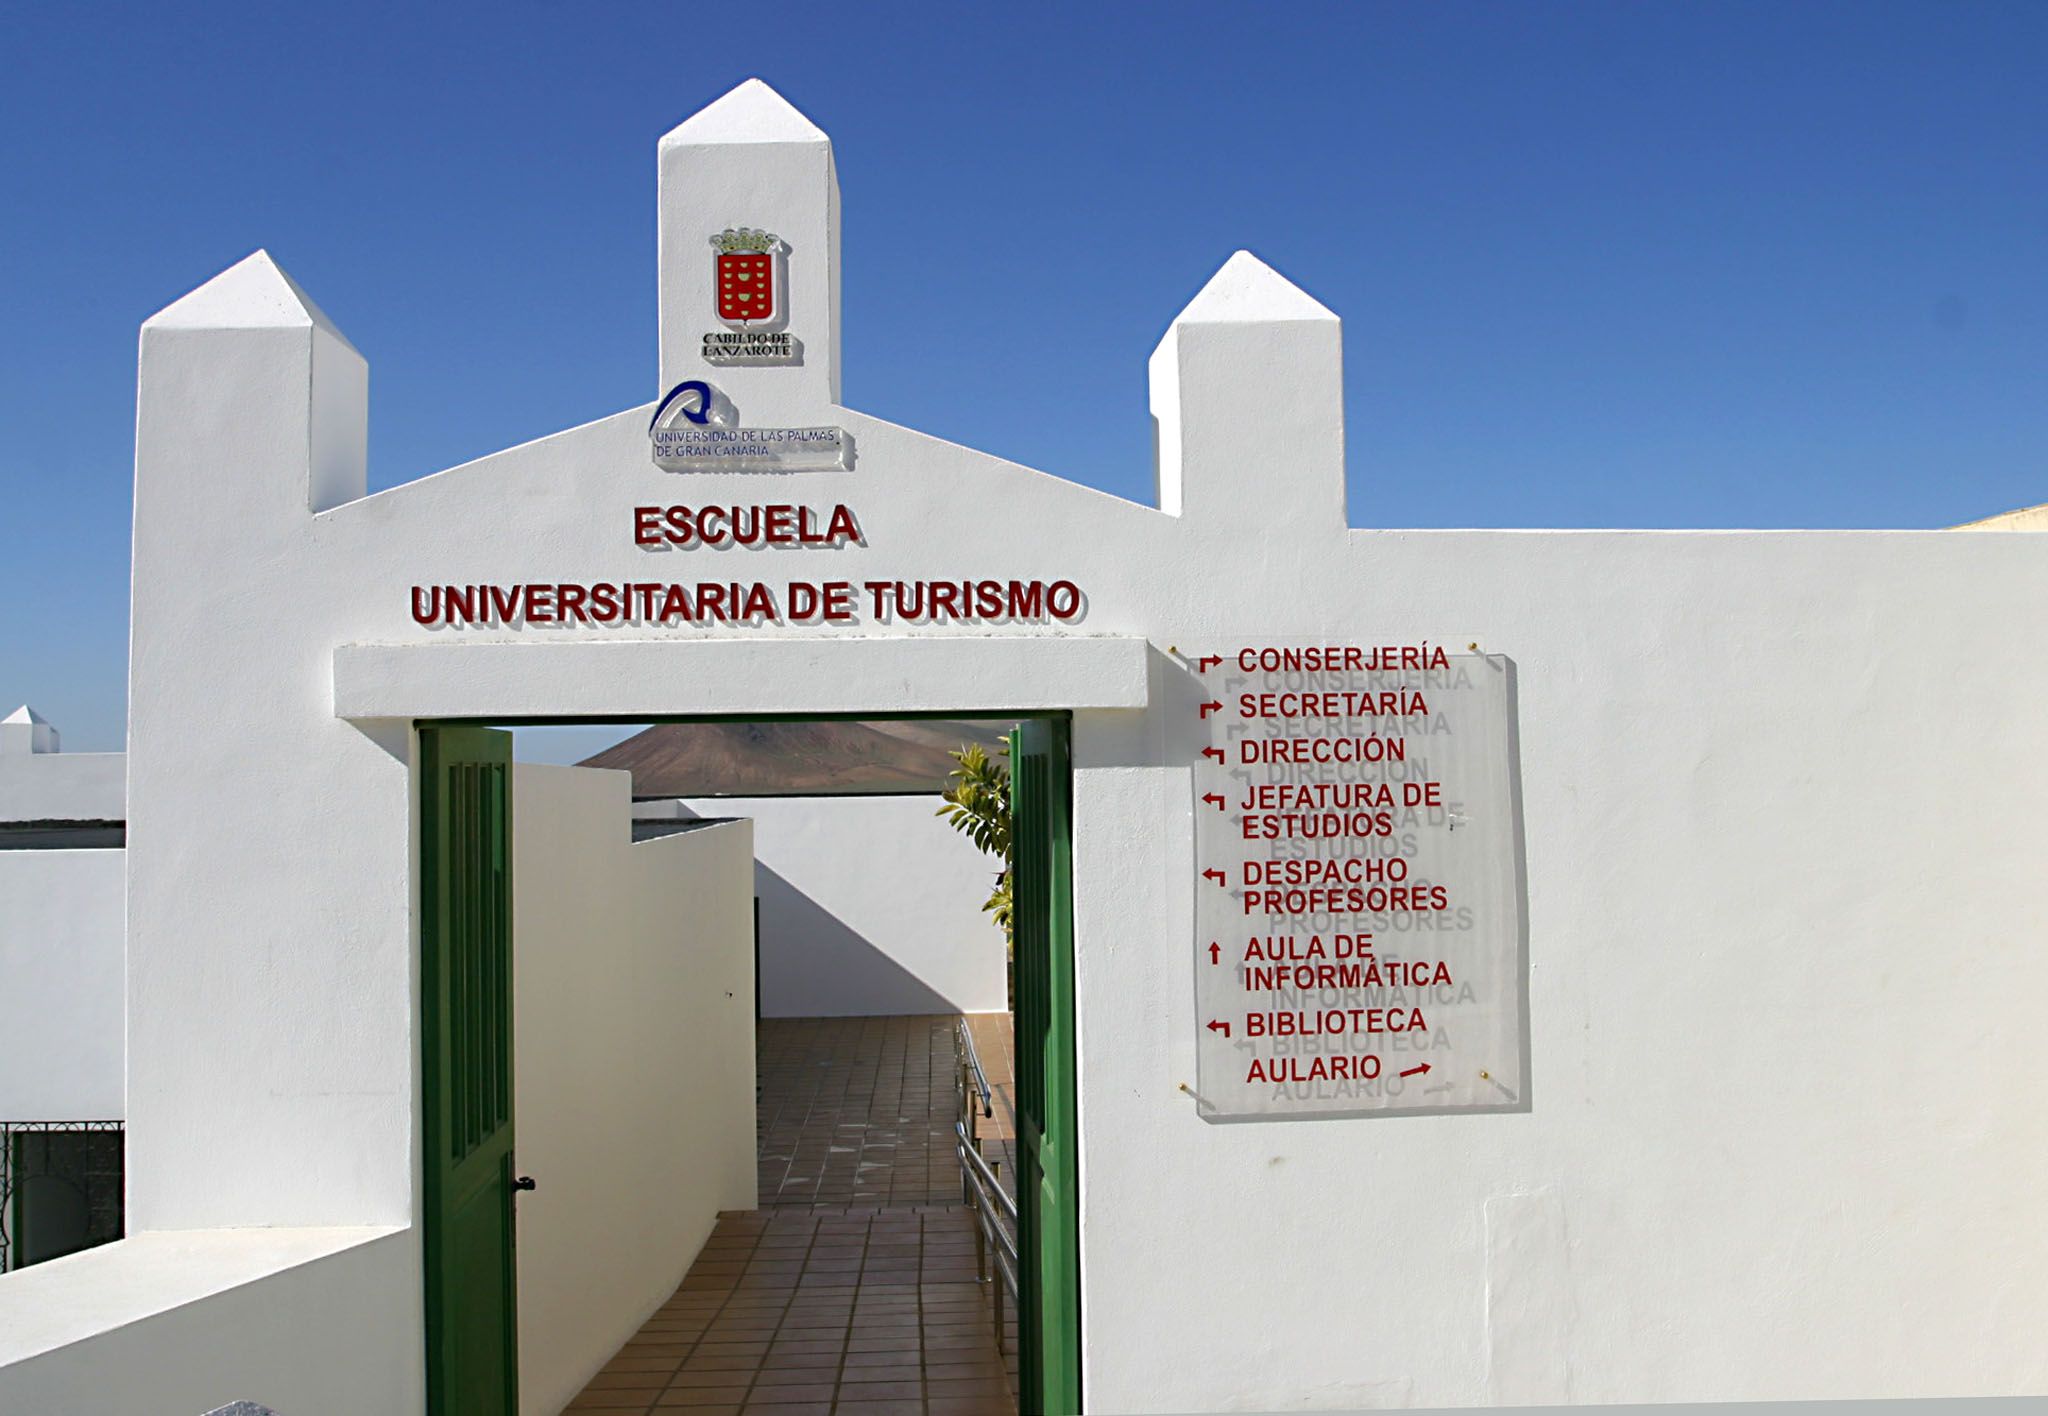 Escuela de turismo de Lanzarote. Foto: Cedida por el Cabildo de Lanzarote.